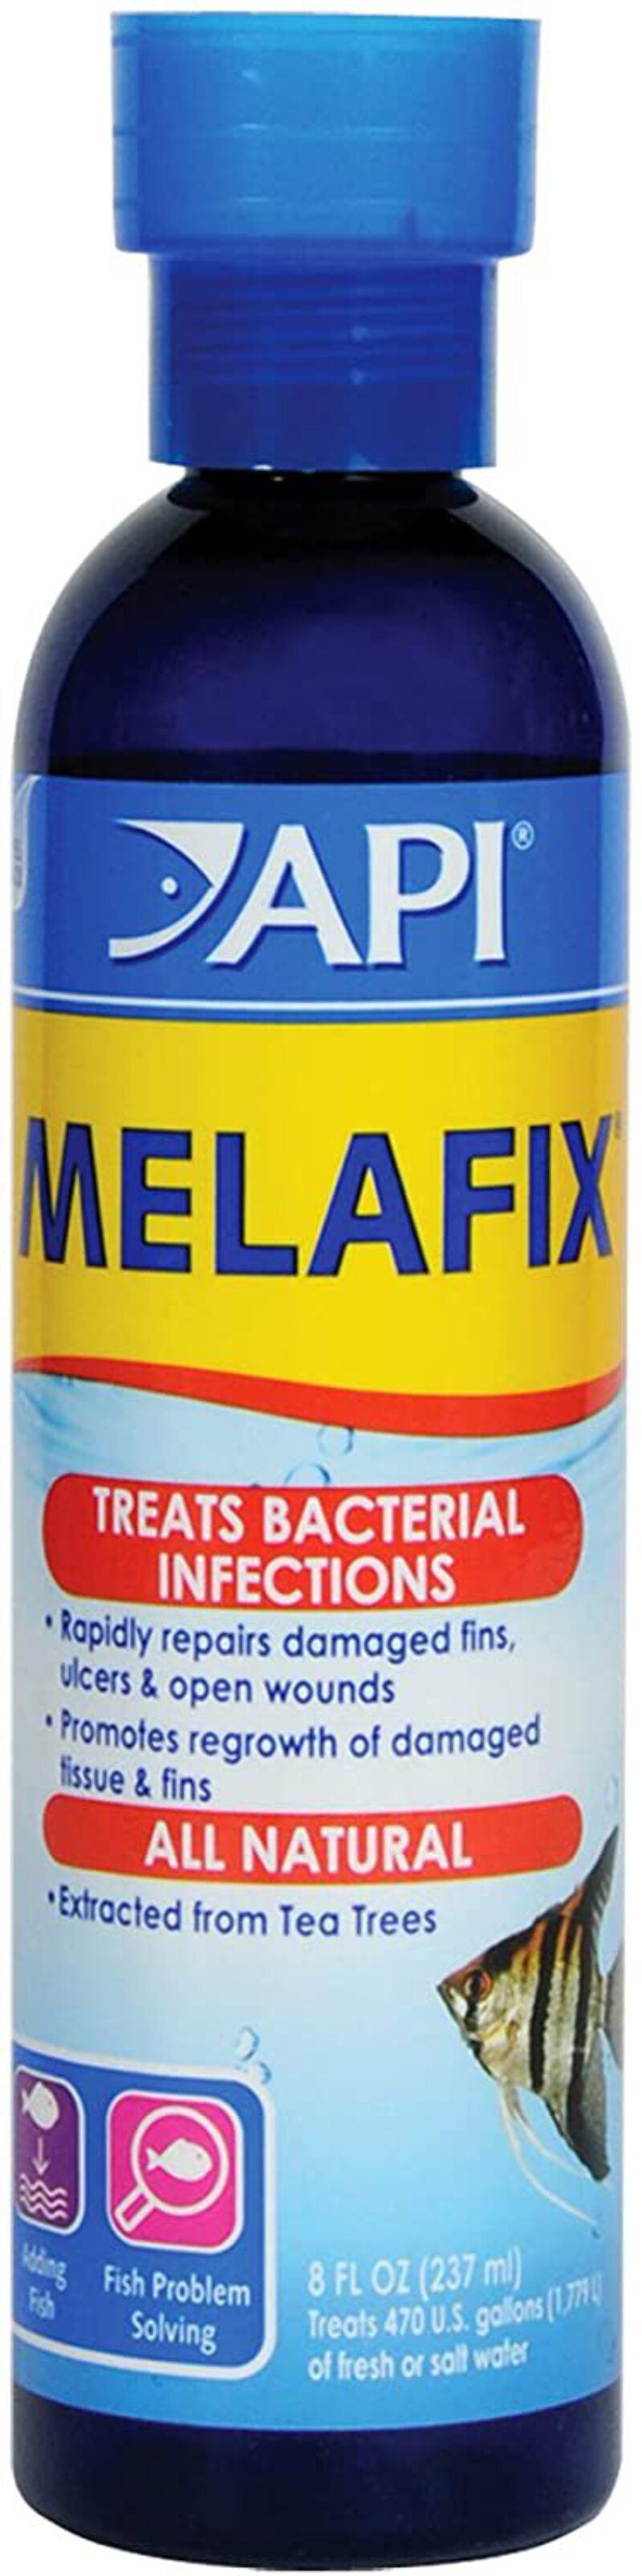 API® Melafix Bacterial Treatment